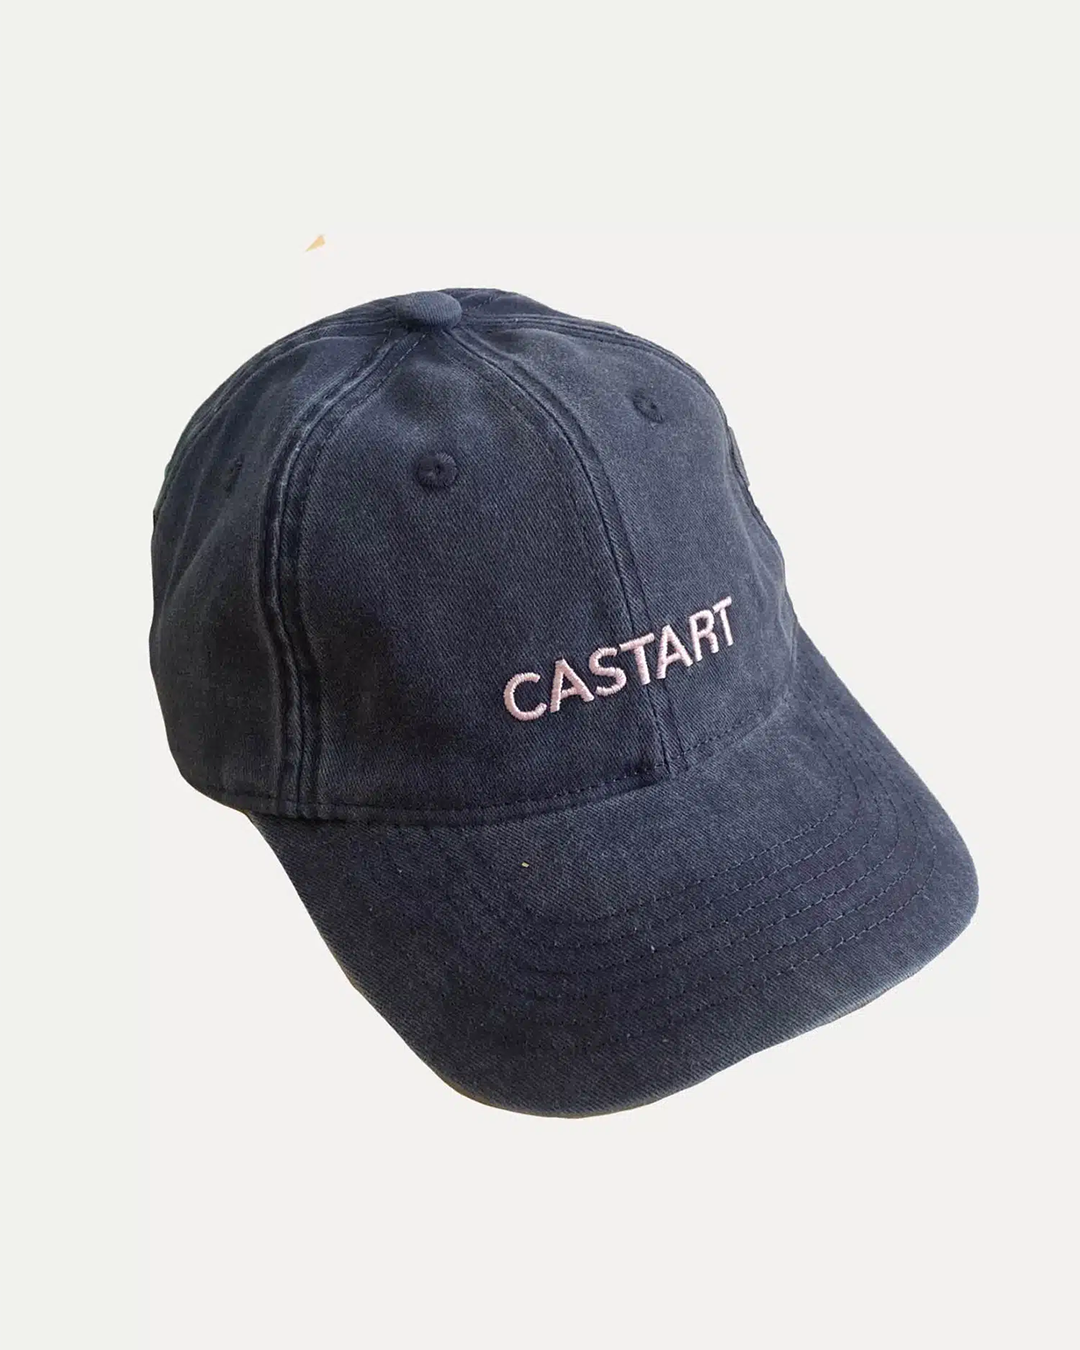 Castart - Logo Cap - Navy